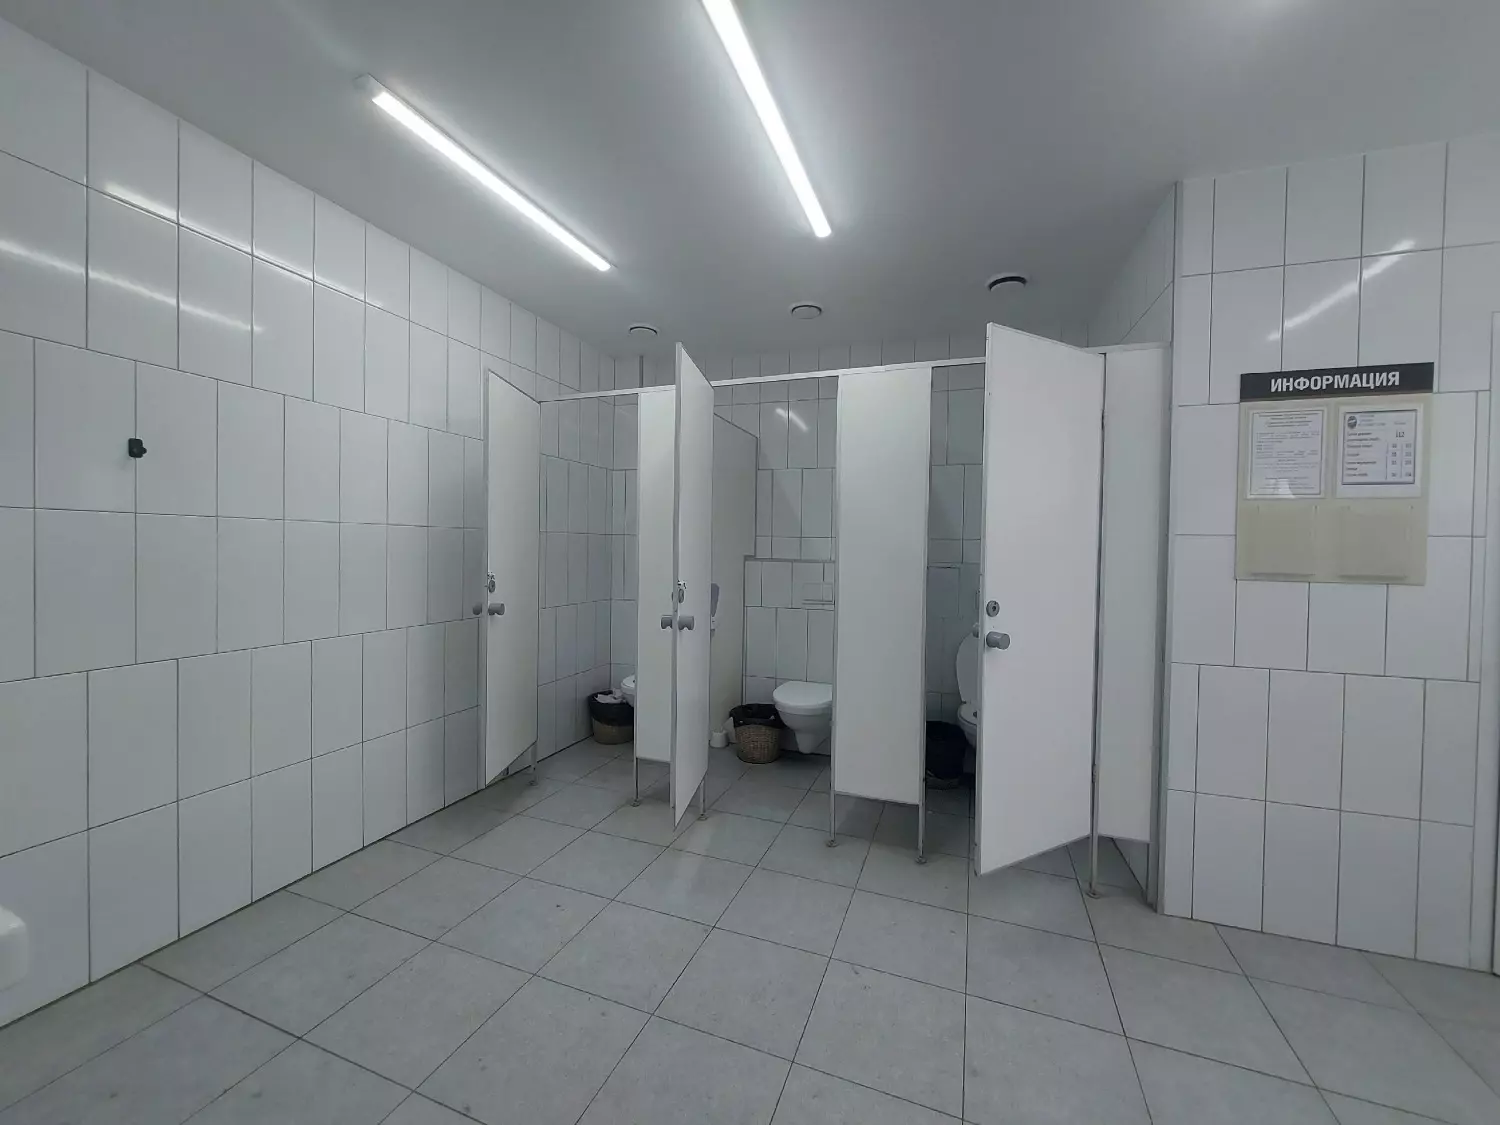 Общественный туалет в кремле